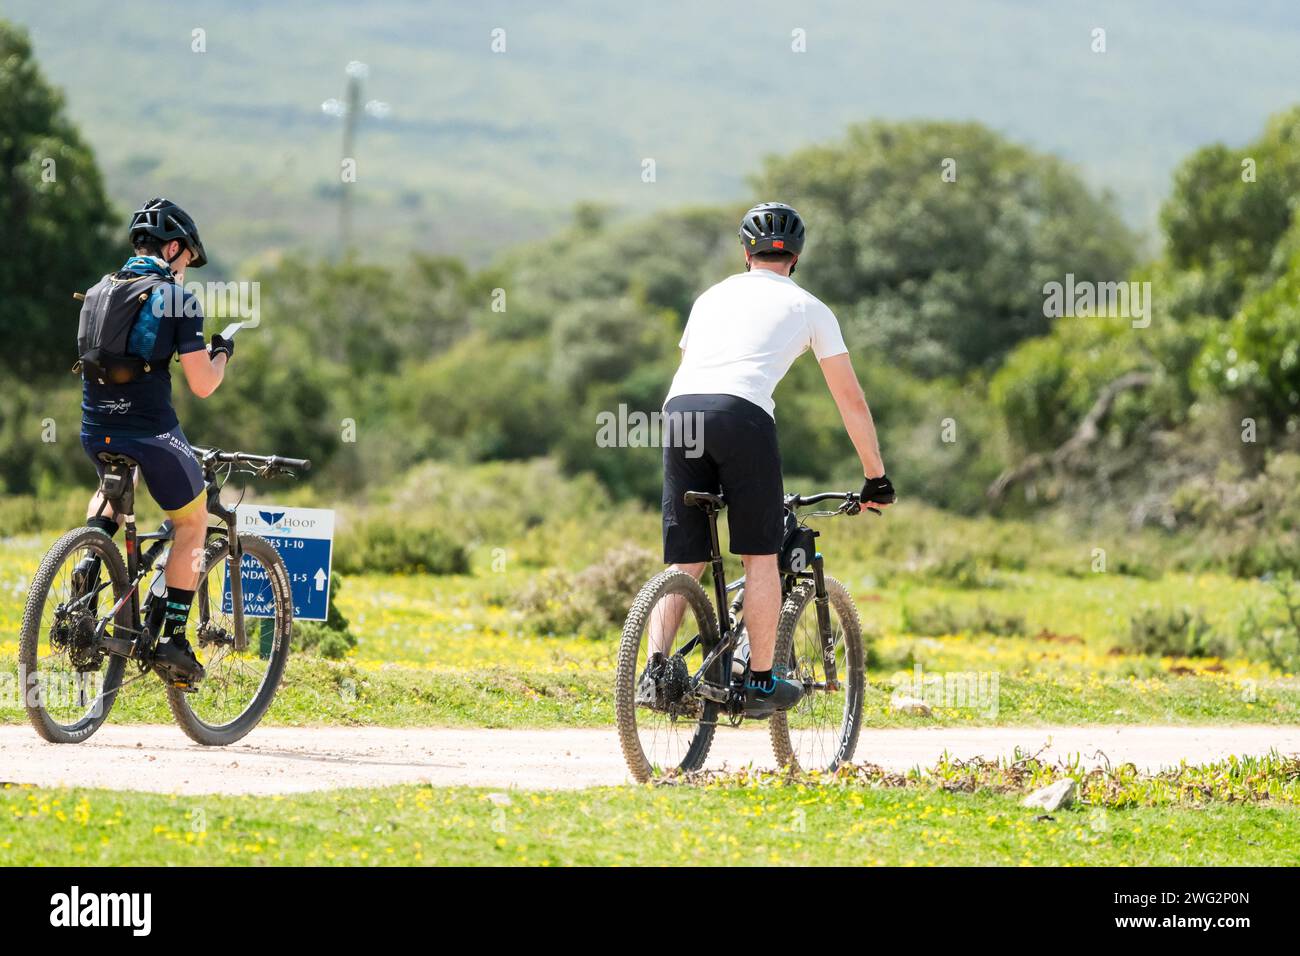 Deux cyclistes masculins cyclistes à travers la réserve naturelle de Hoop, Western Cape, Afrique du Sud concept de loisirs et d'activités de loisirs dans la nature Banque D'Images